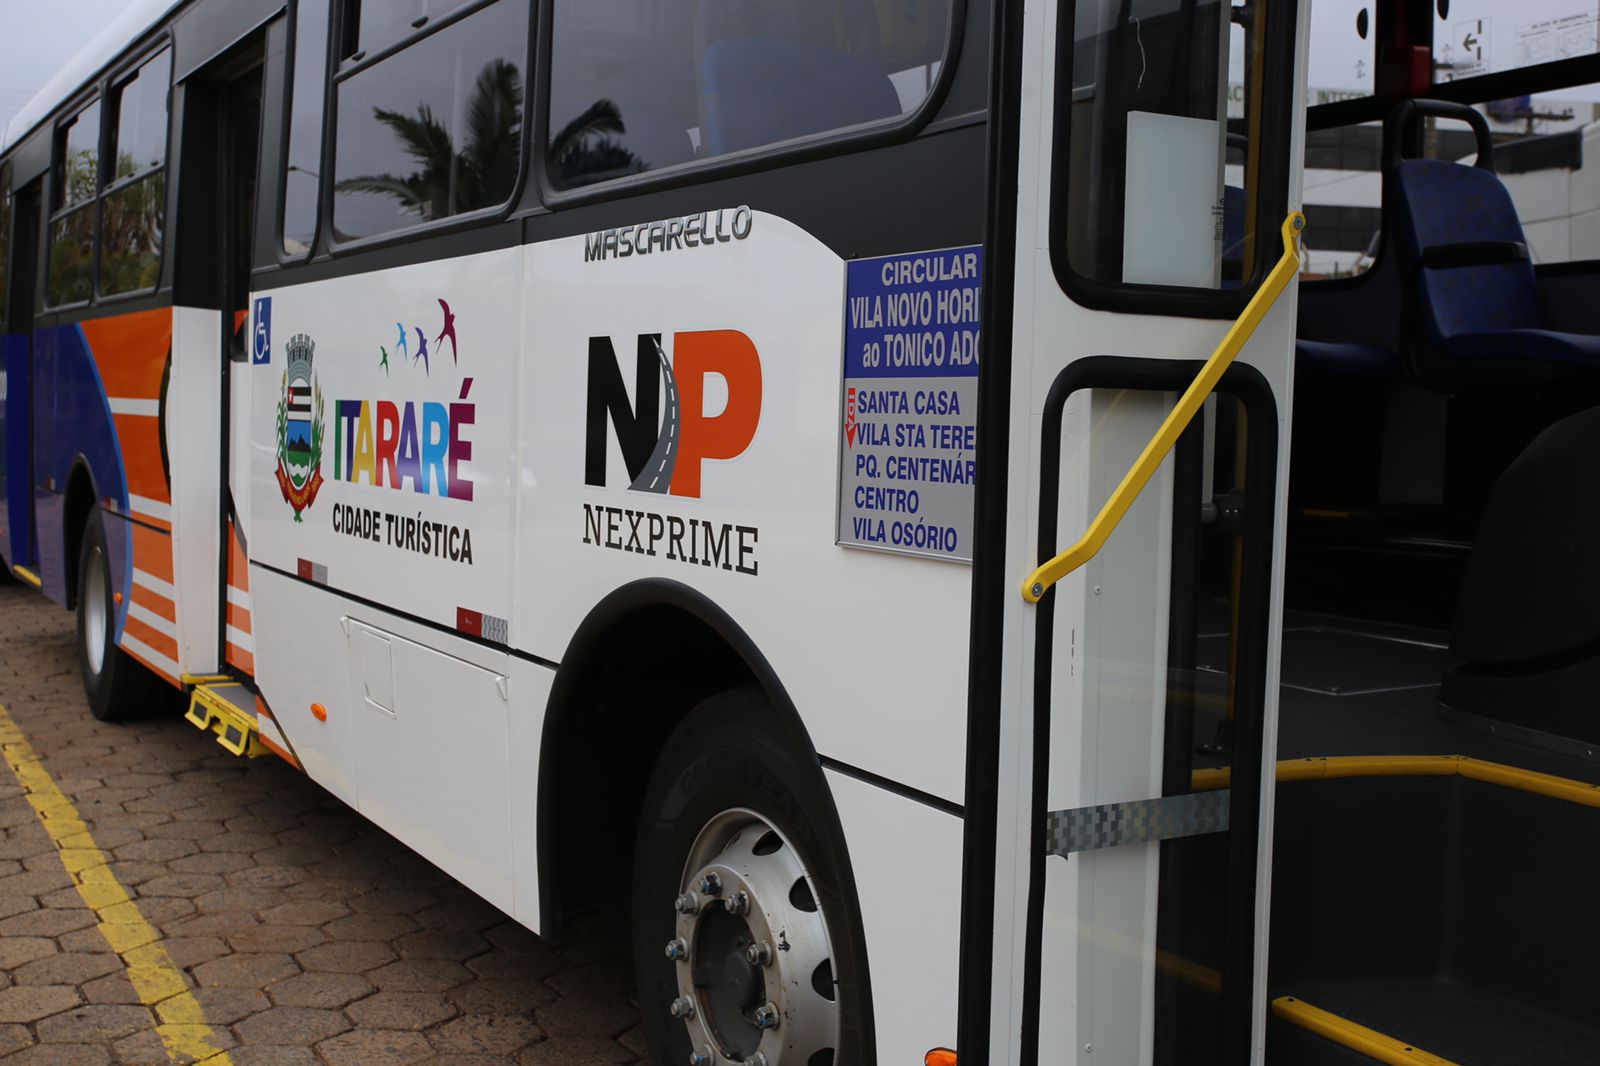 Prefeitura de Itararé (SP) disponibiliza ônibus gratuito para o Parque da Barreira neste feriado (15)